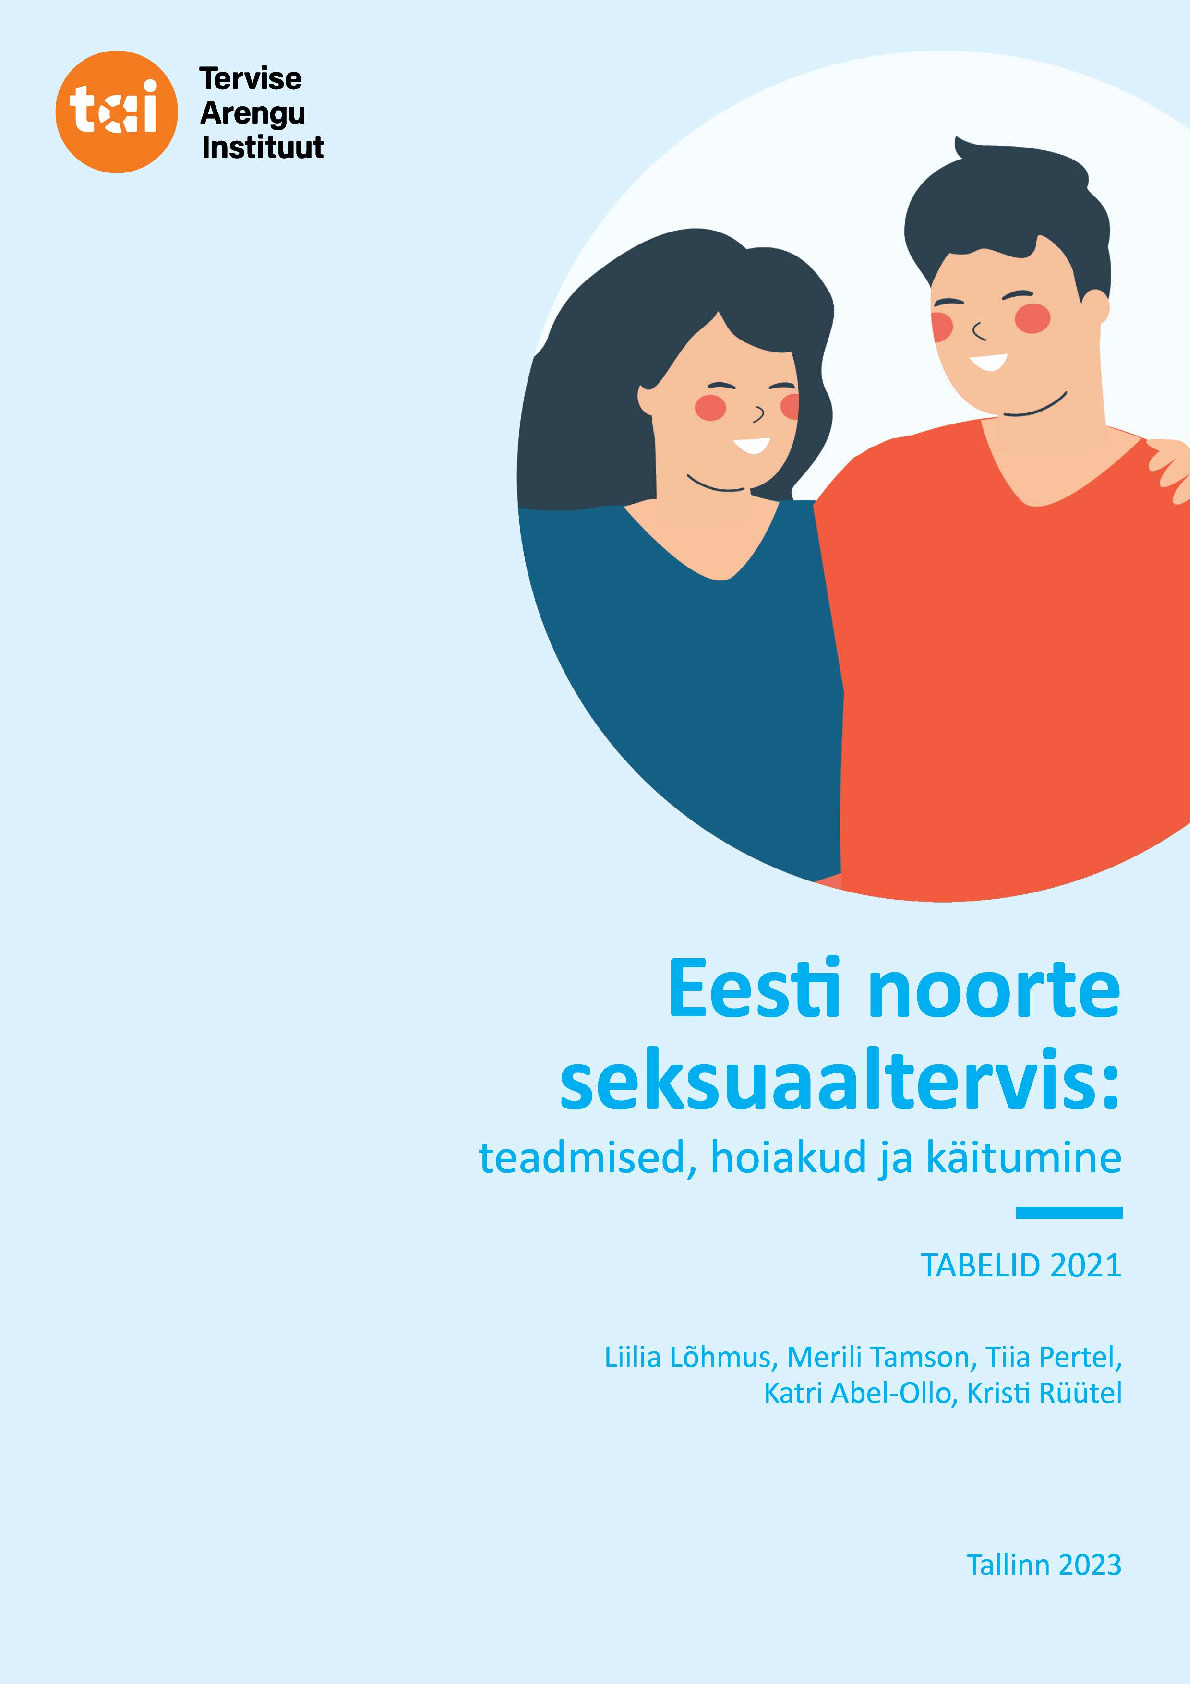 Eesti noorte seksuaaltervis: teadmised, hoiakud ja käitumine. Tabelid 2021